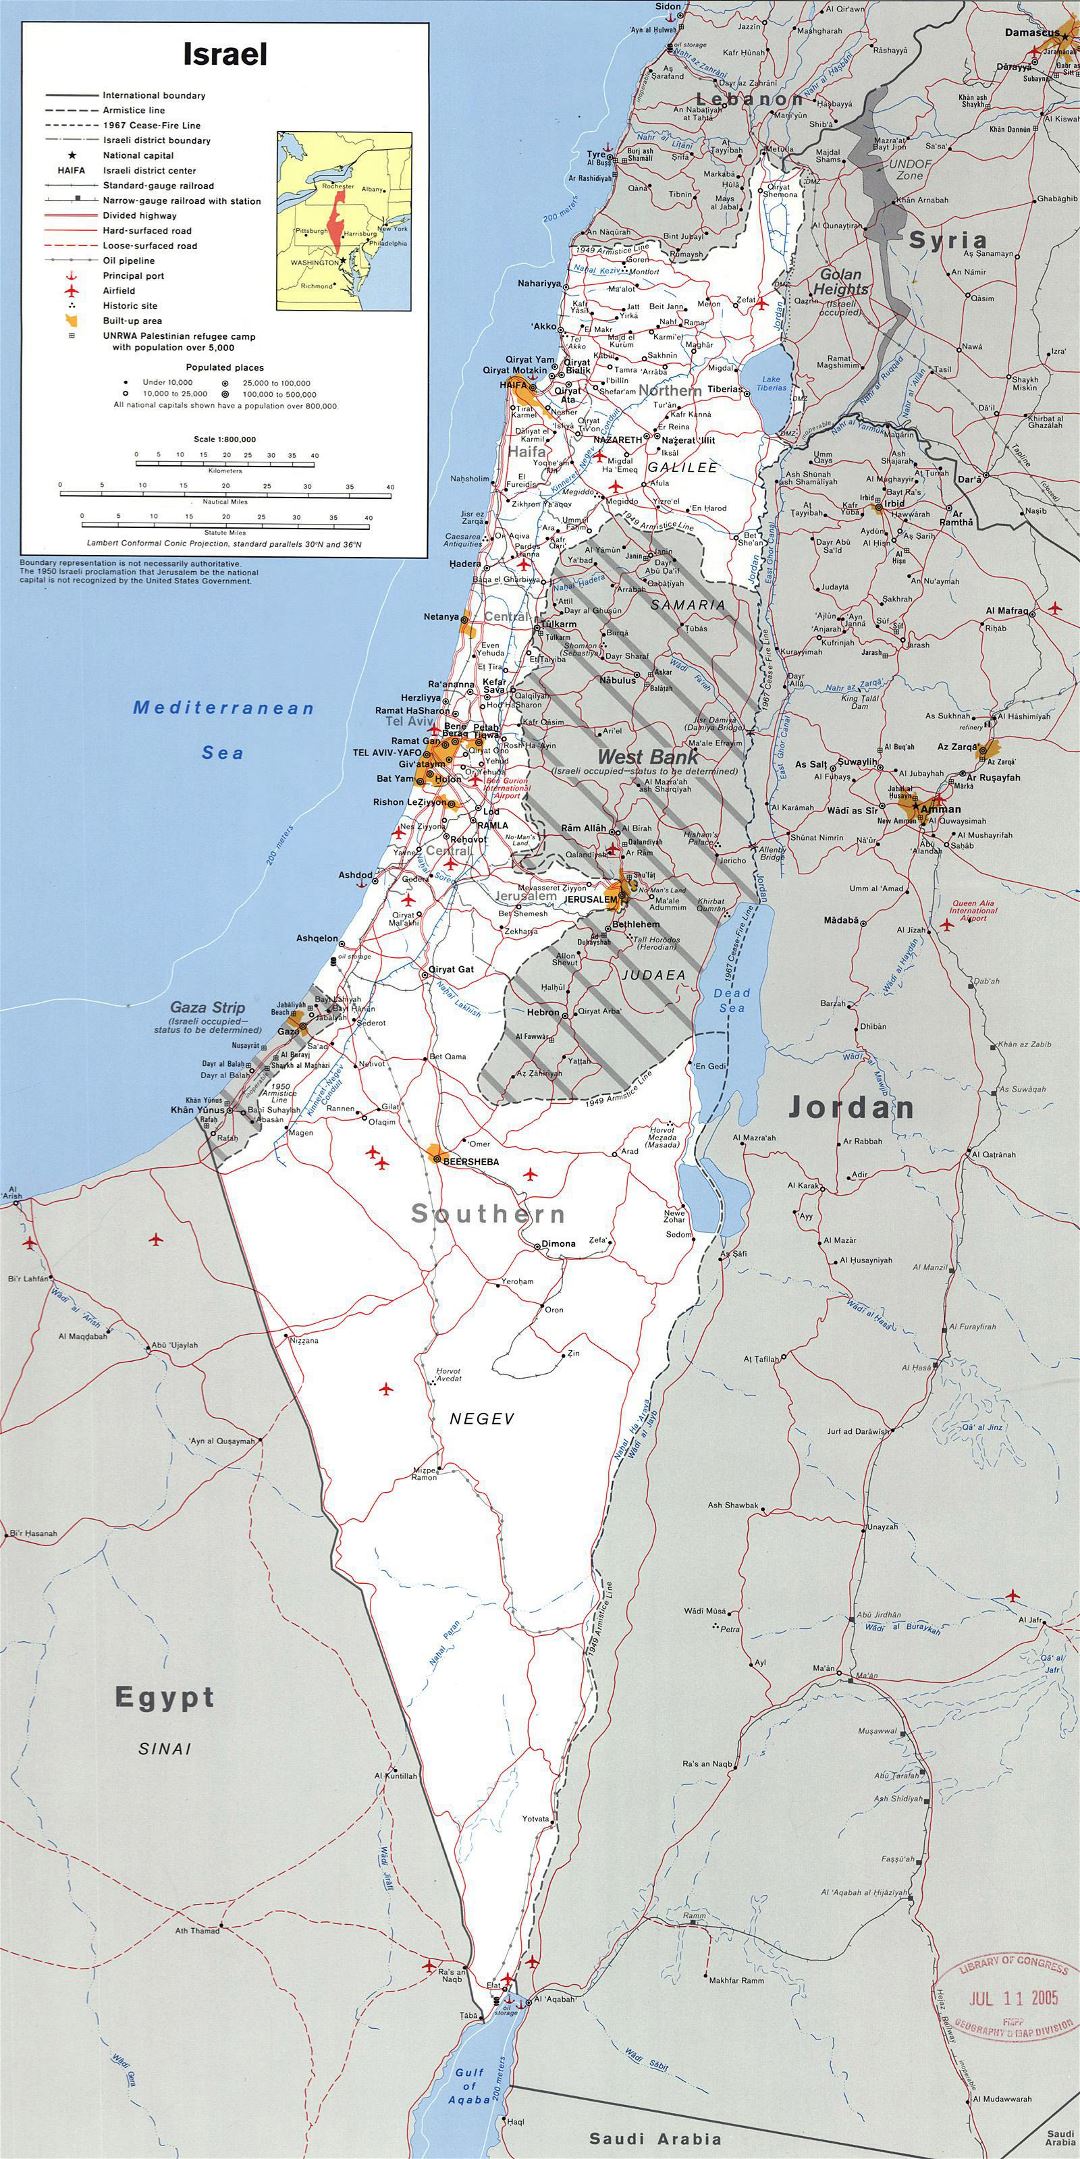 Grande detallado mapa político de Israel con Cisjordania, la Franja de Gaza y Golgan Heights